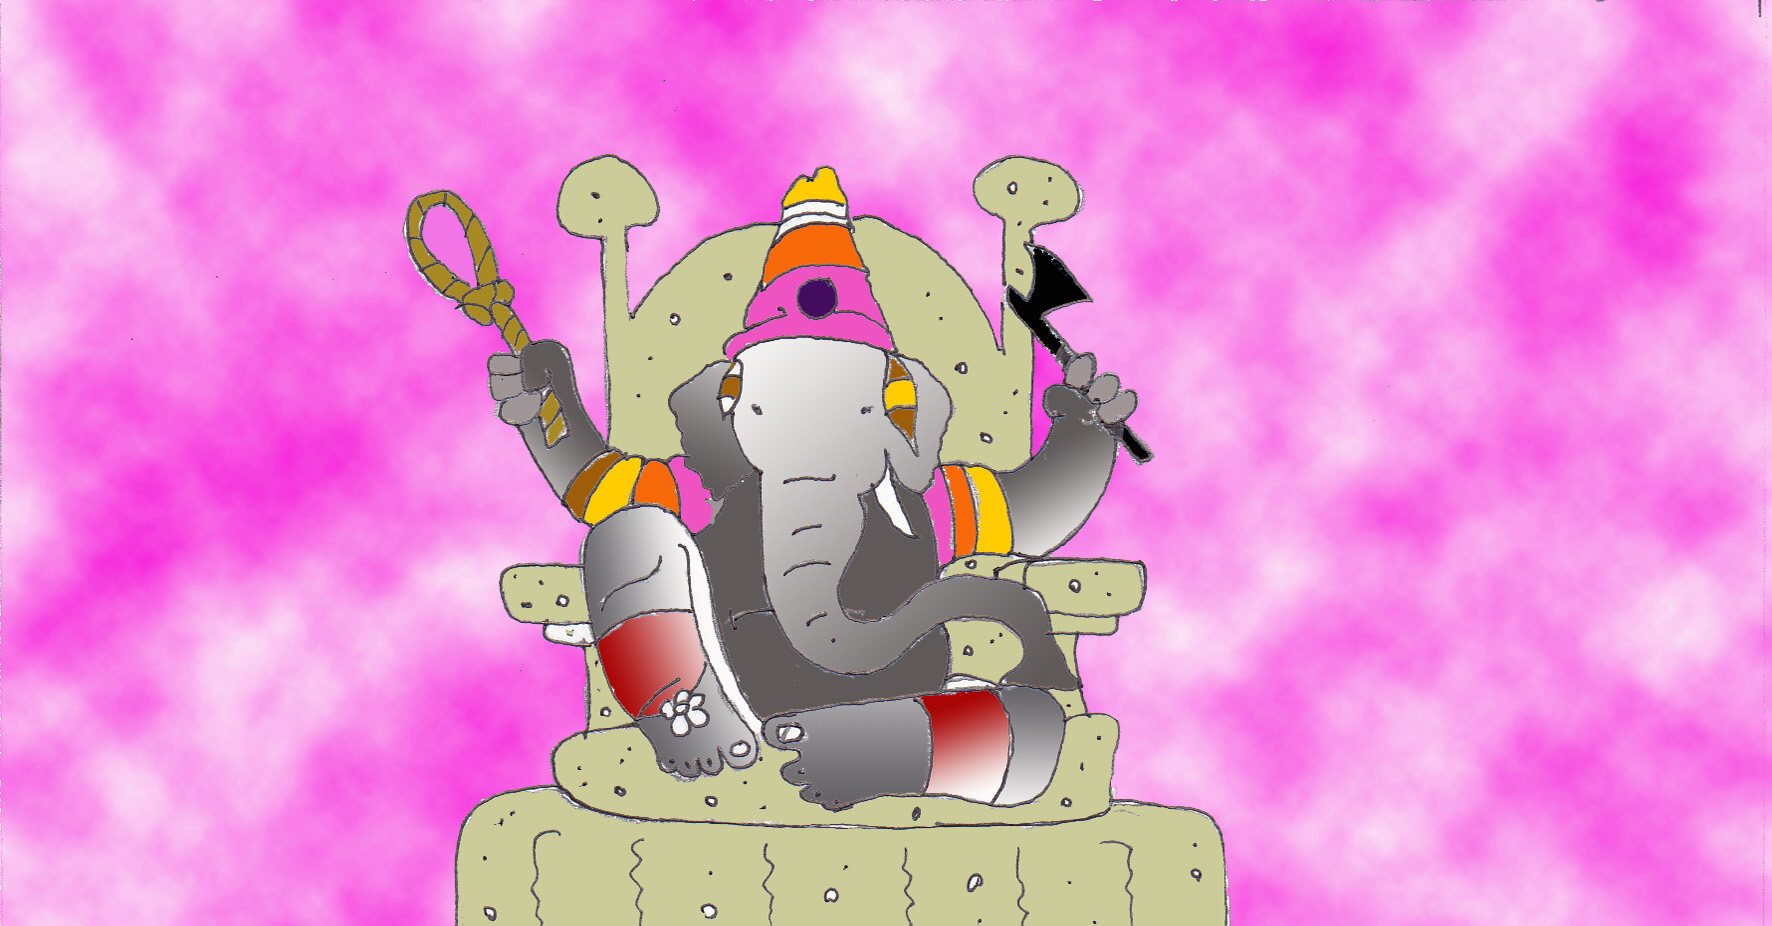 Immagine di Ganesh seduto sul trono (Per leggerne la descrizione proseguire nel link). Ganesh seduto, indossa un cappuccio e altri paramenti variopinti. Stringe nelle mani due oggetti simbolici: un'ascia e un cappio. Lo sfondo è di colore rosa sfumato.